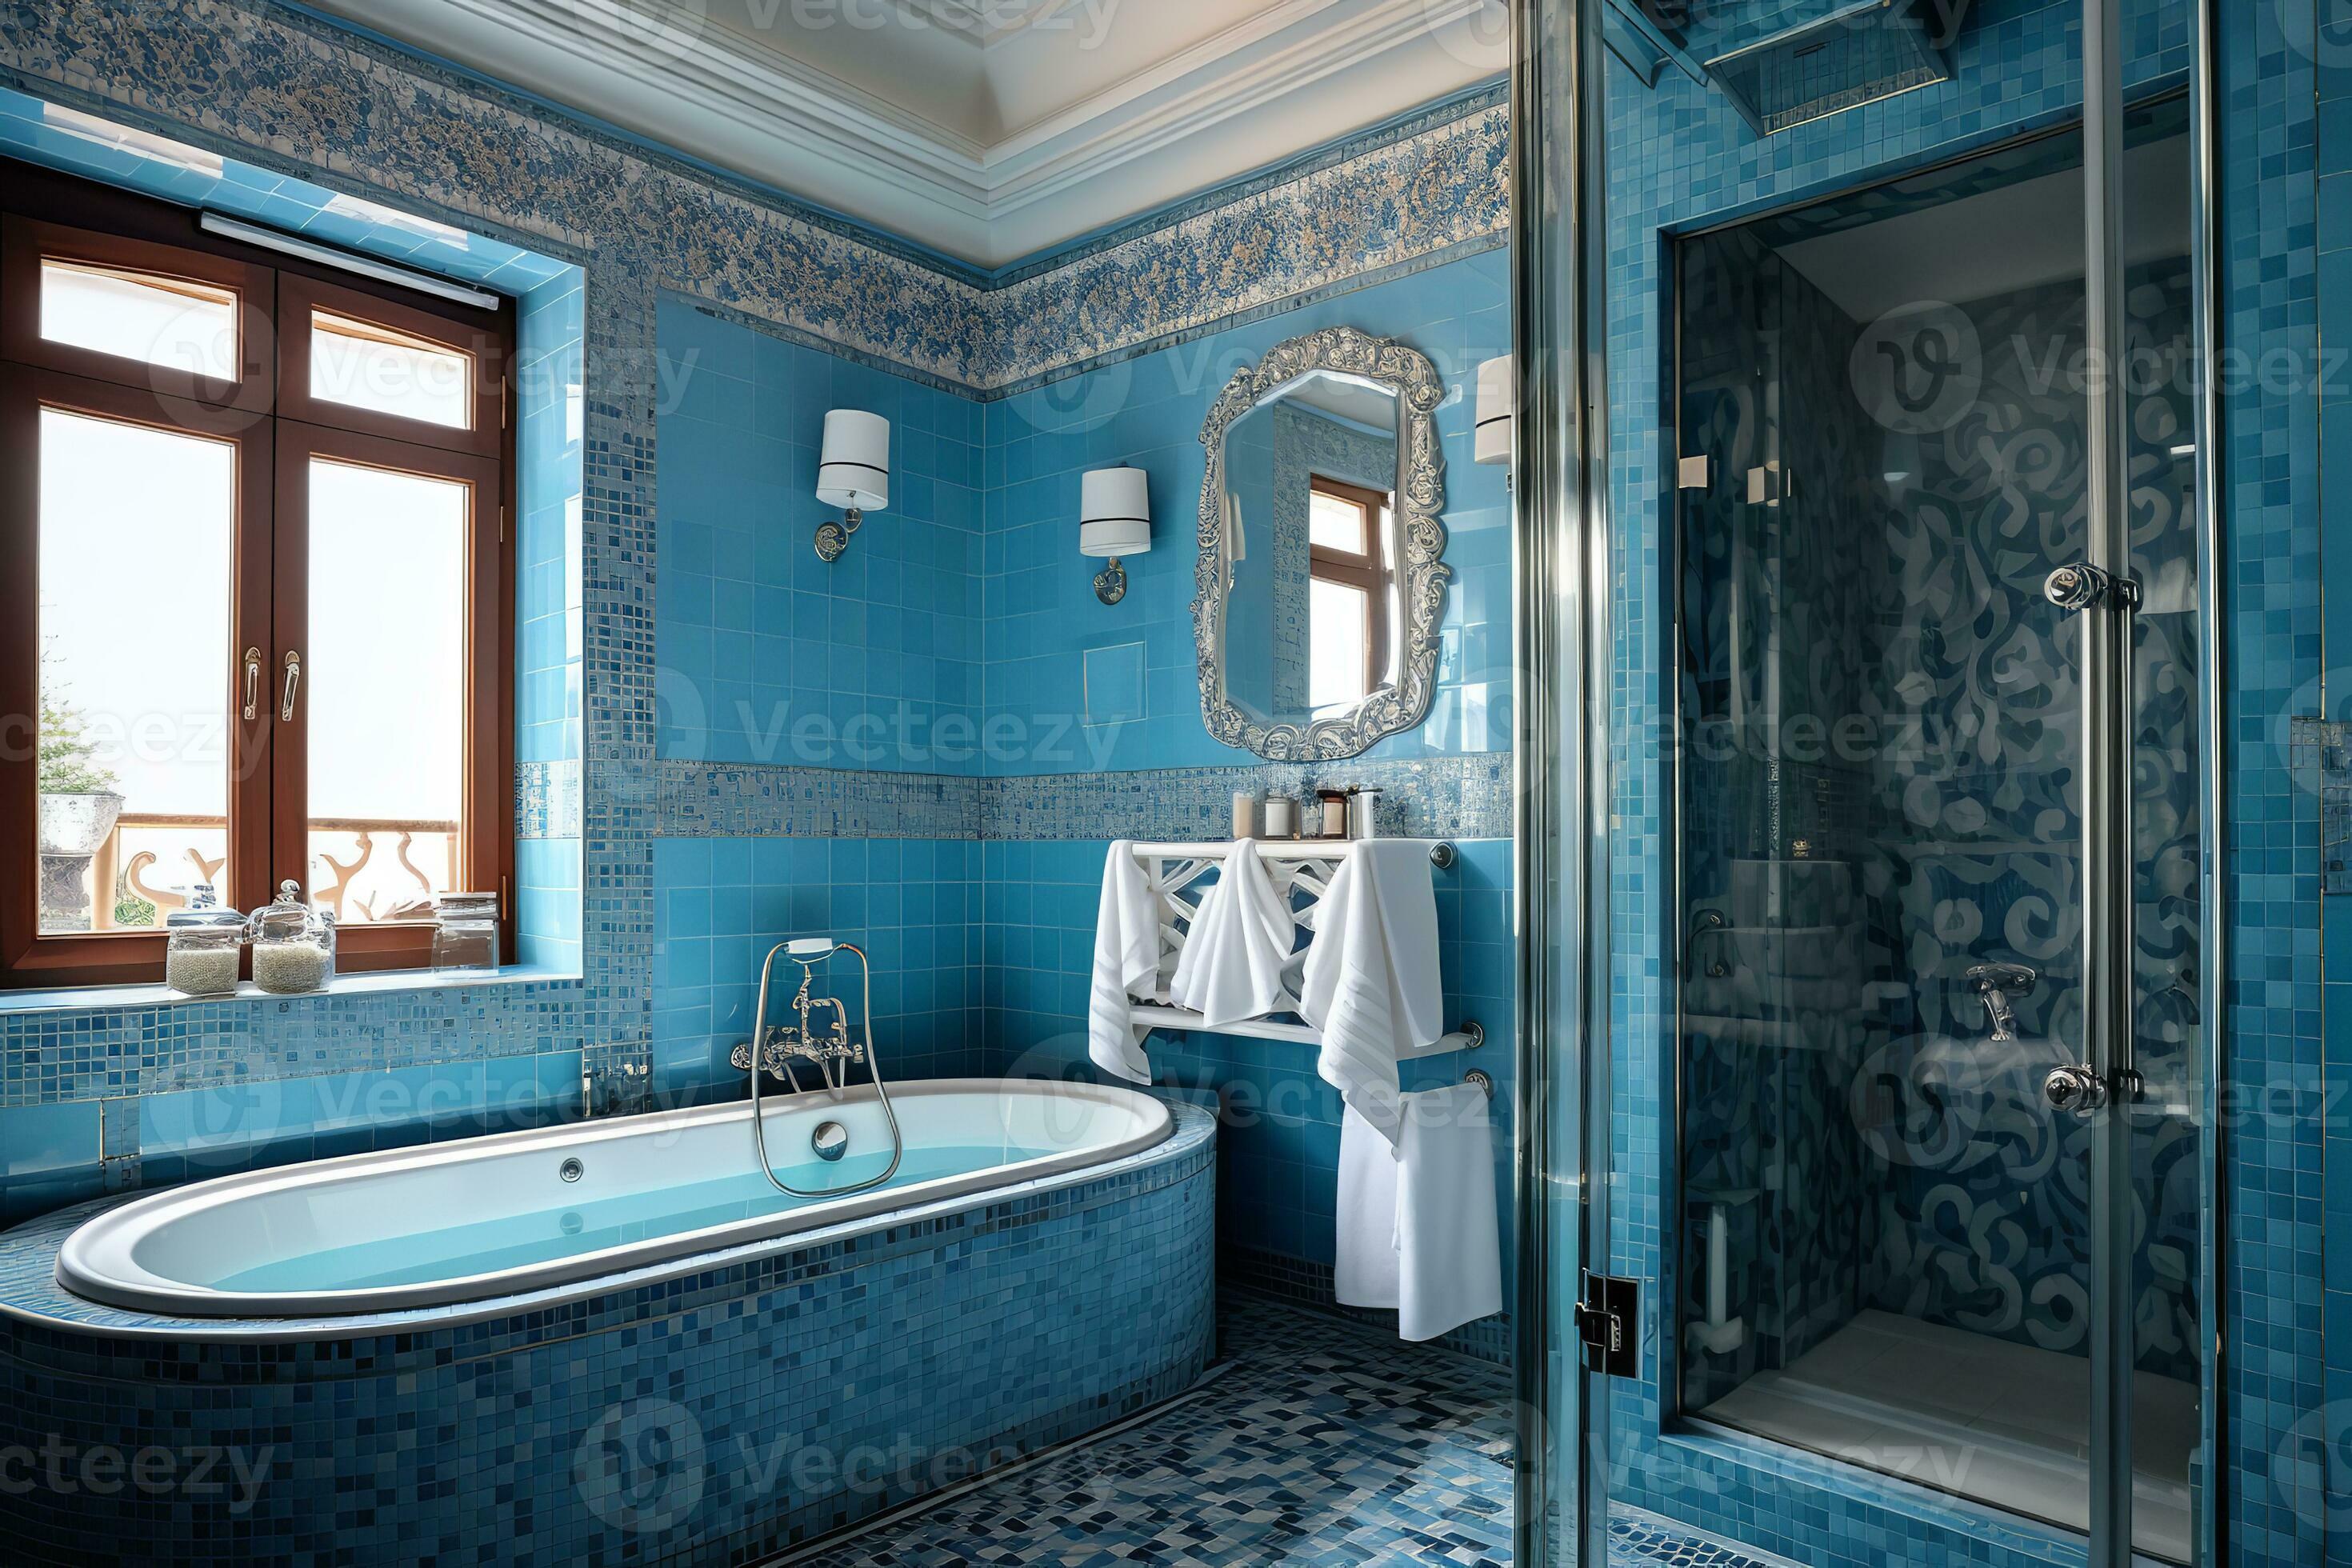 A stunning blue bathroom with a freestanding bathtub, walk-in